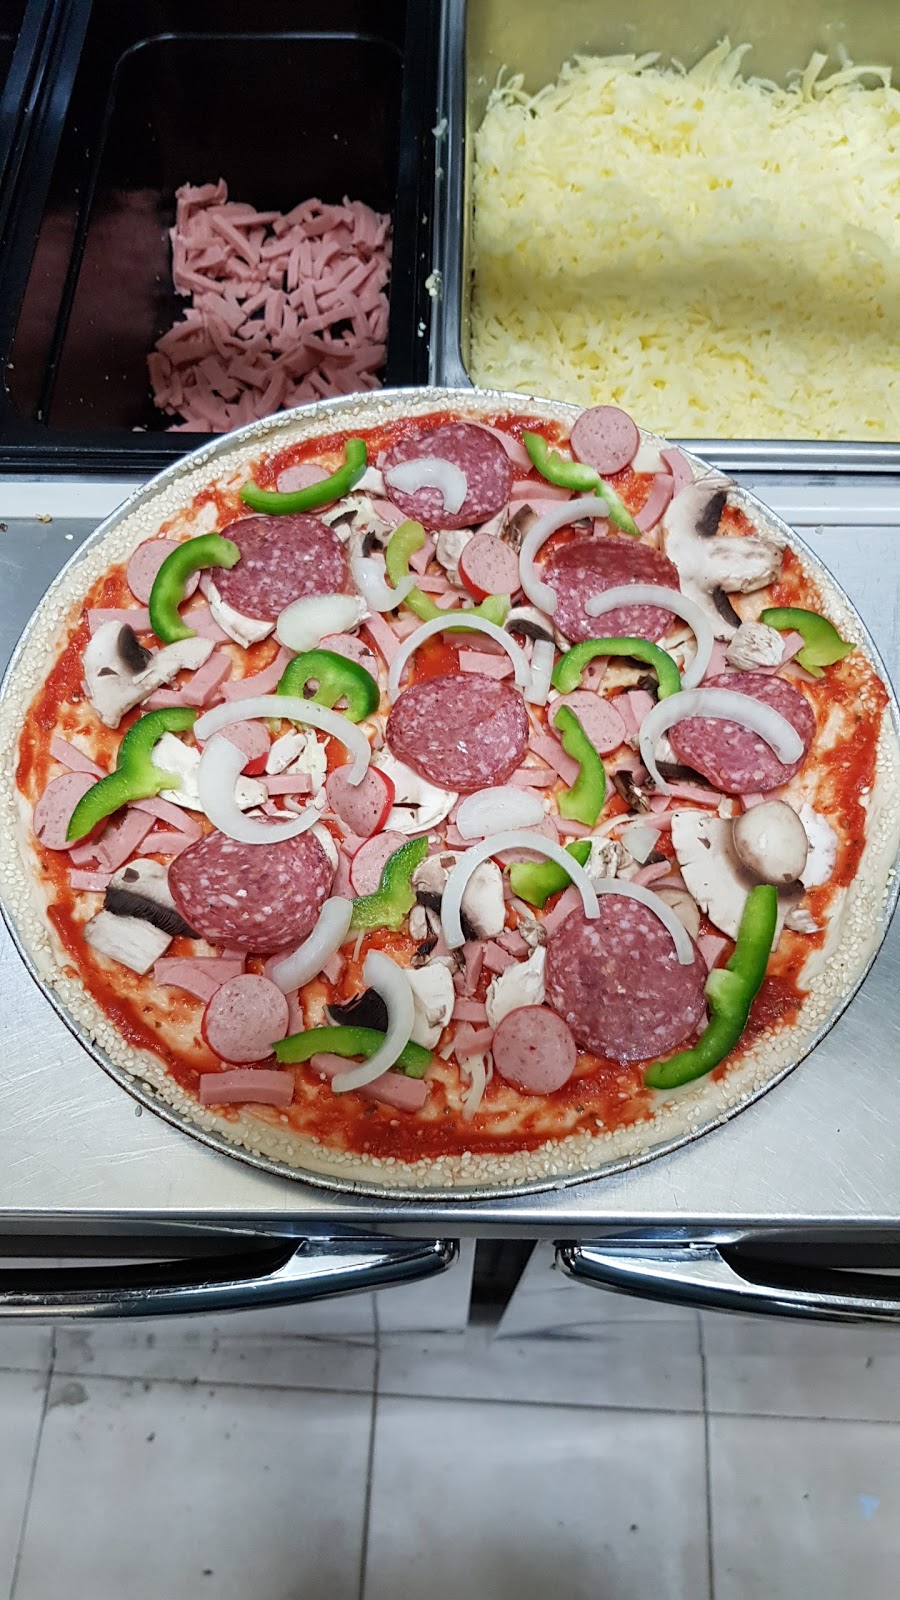 Lugarno Pizzeria | meal delivery | 4/1012 Forest Rd, Lugarno NSW 2210, Australia